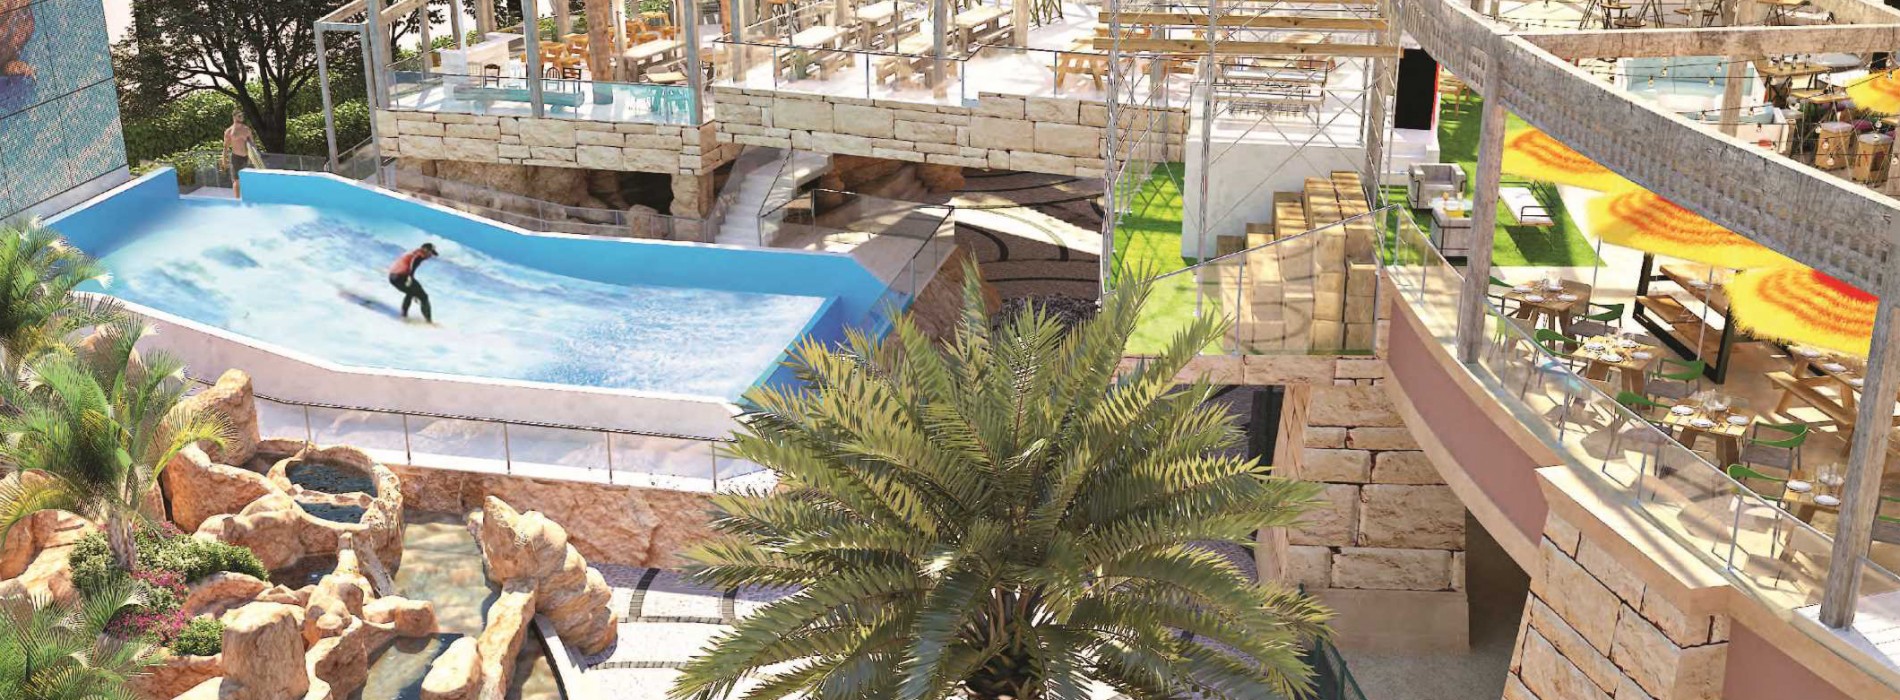 Atlantis, The Palm to launch a new entertainment destination